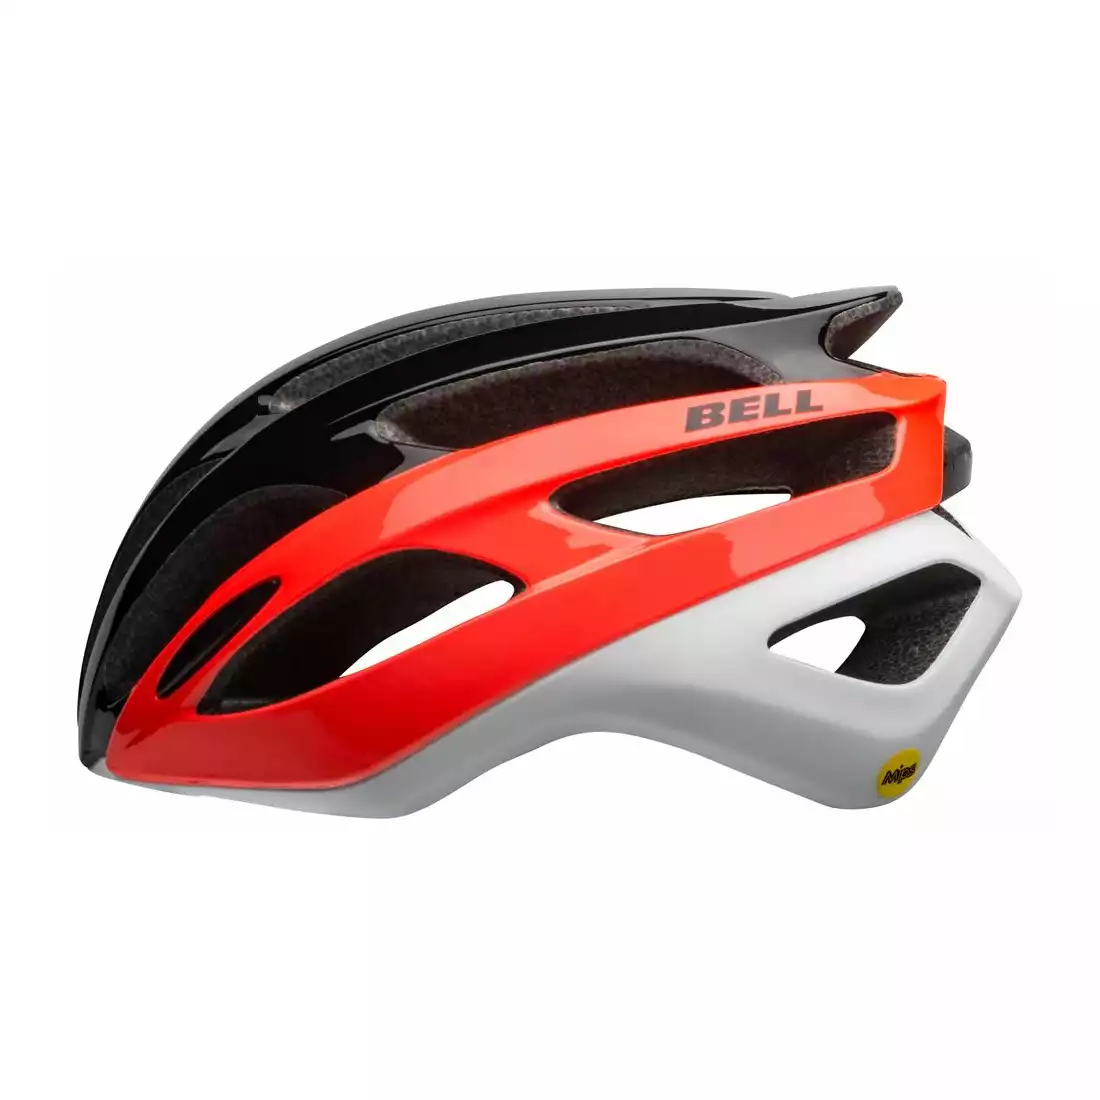 Bell Falcon MIPS Road Bike Helmet Matte-Gloss Black 